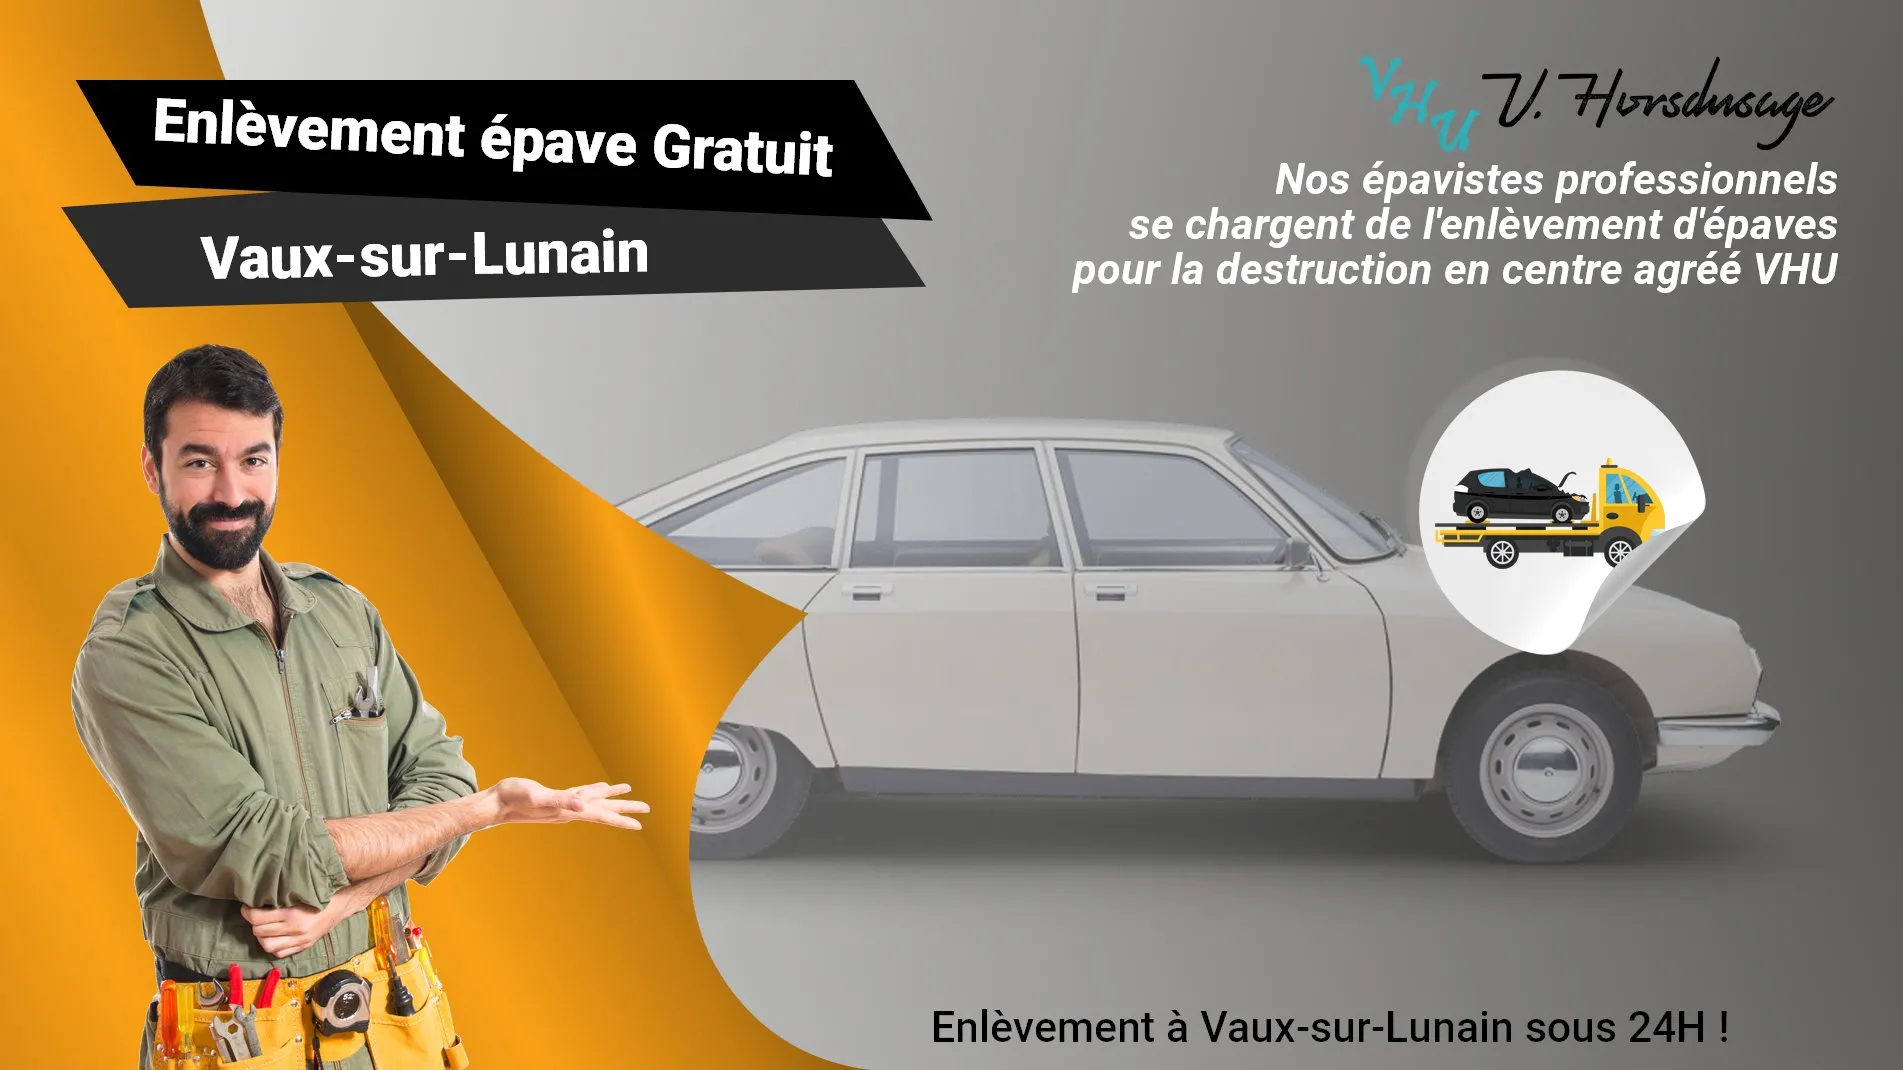 Pour un enlèvement gratuit à Vaux-sur-Lunain, contactez nos épavistes agréé VHU